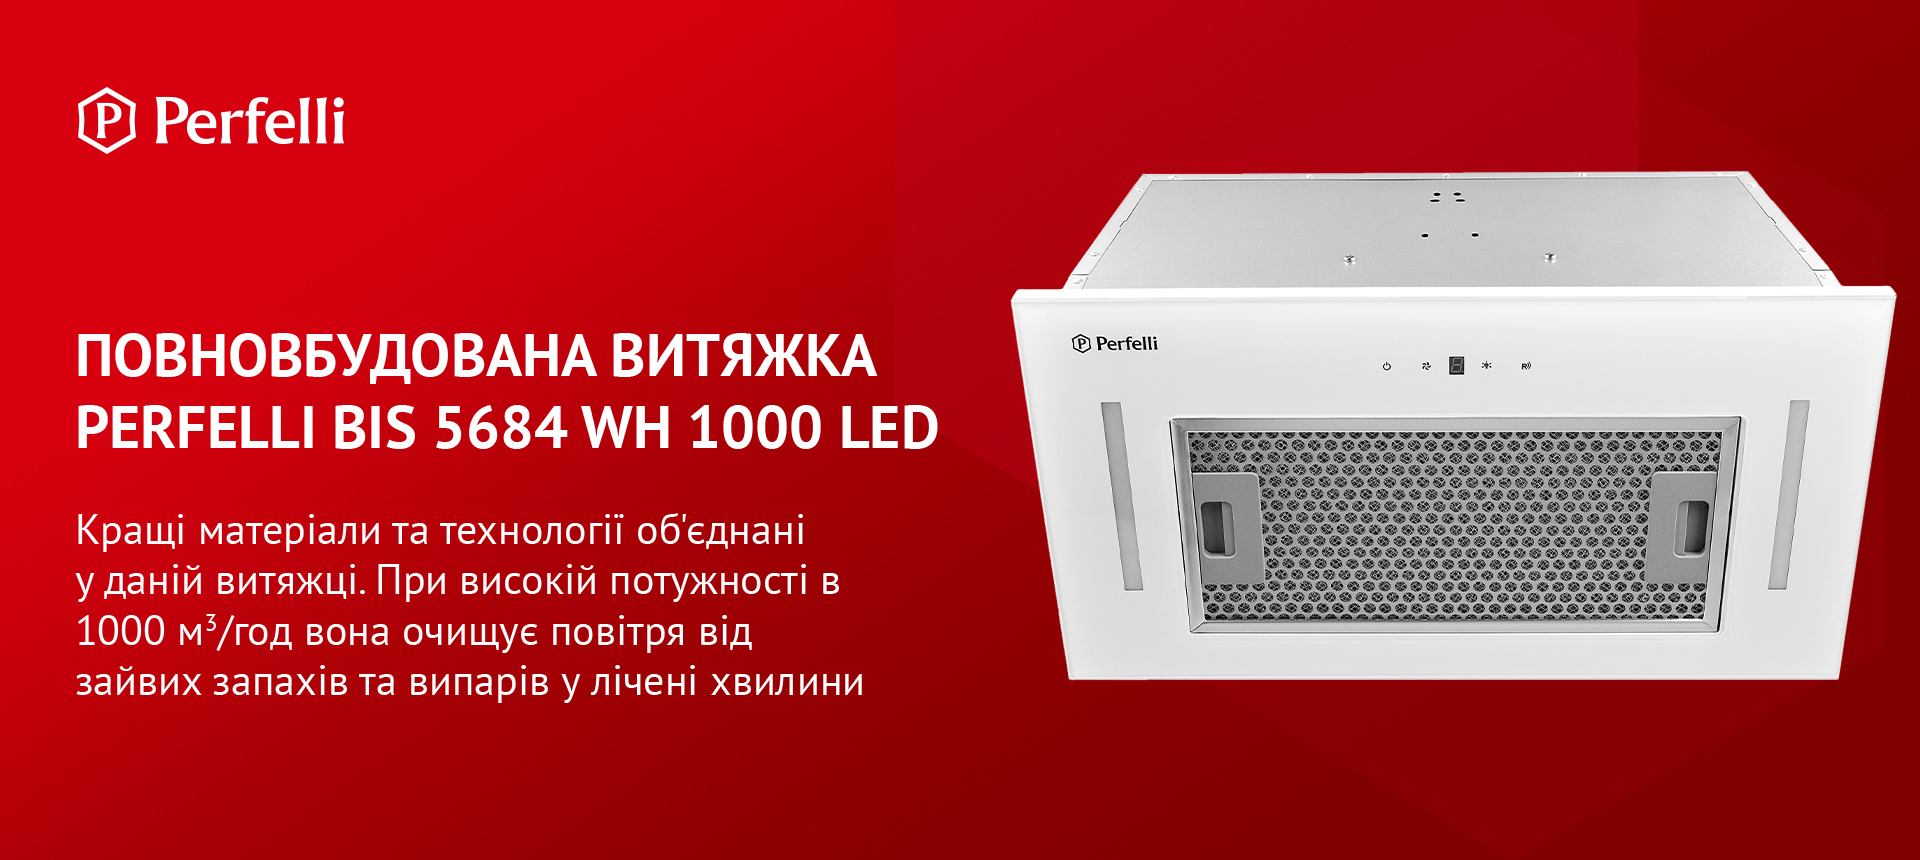 Perfelli BIS 5684 WH 1000 LED в магазине в Киеве - фото 10